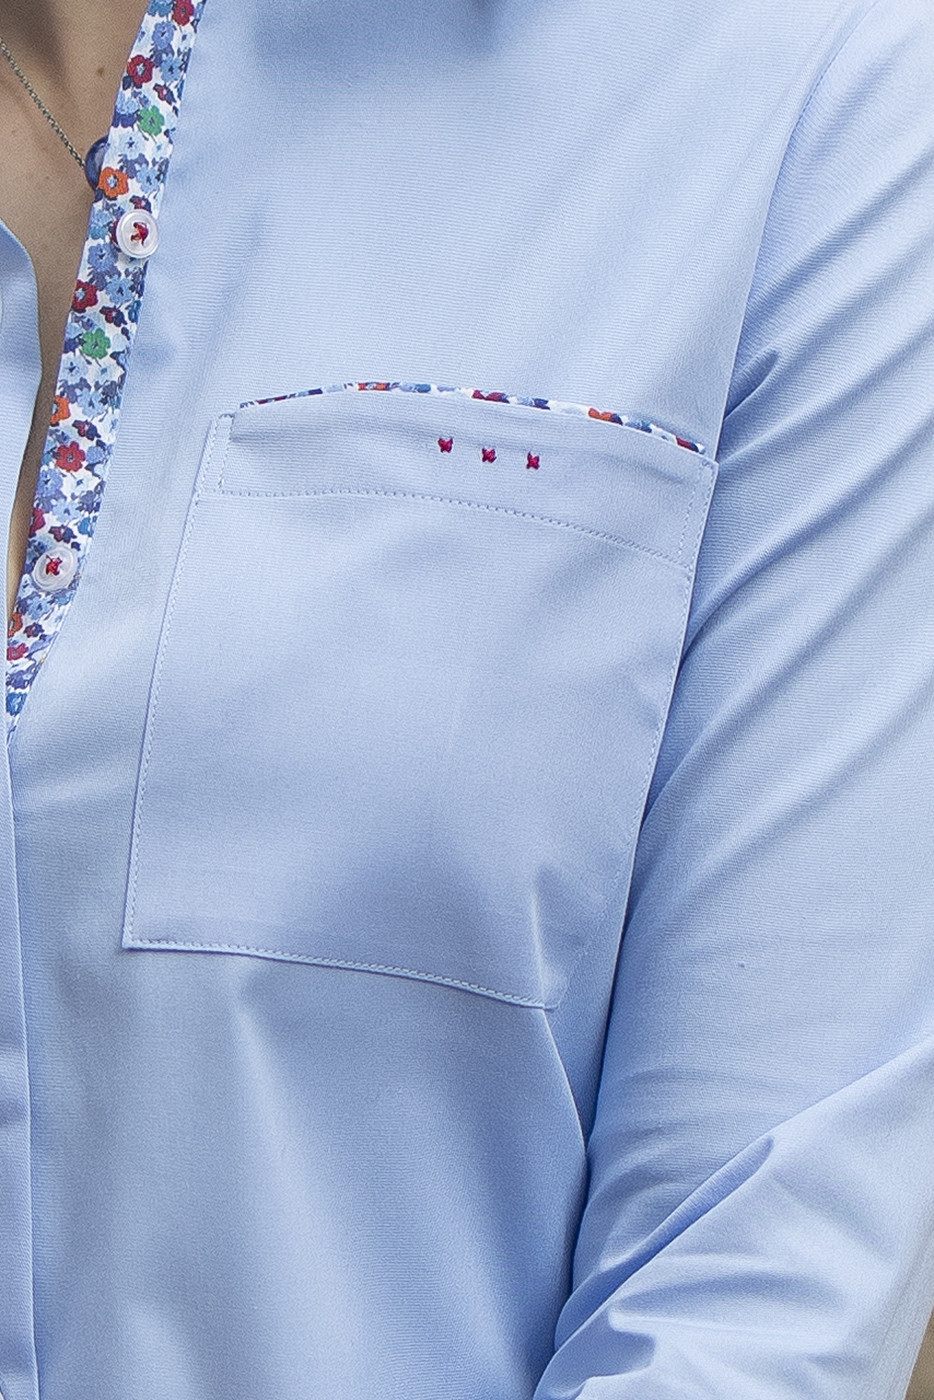 Camisa mujer en sarga celeste con bolsillo y coordinados de flores